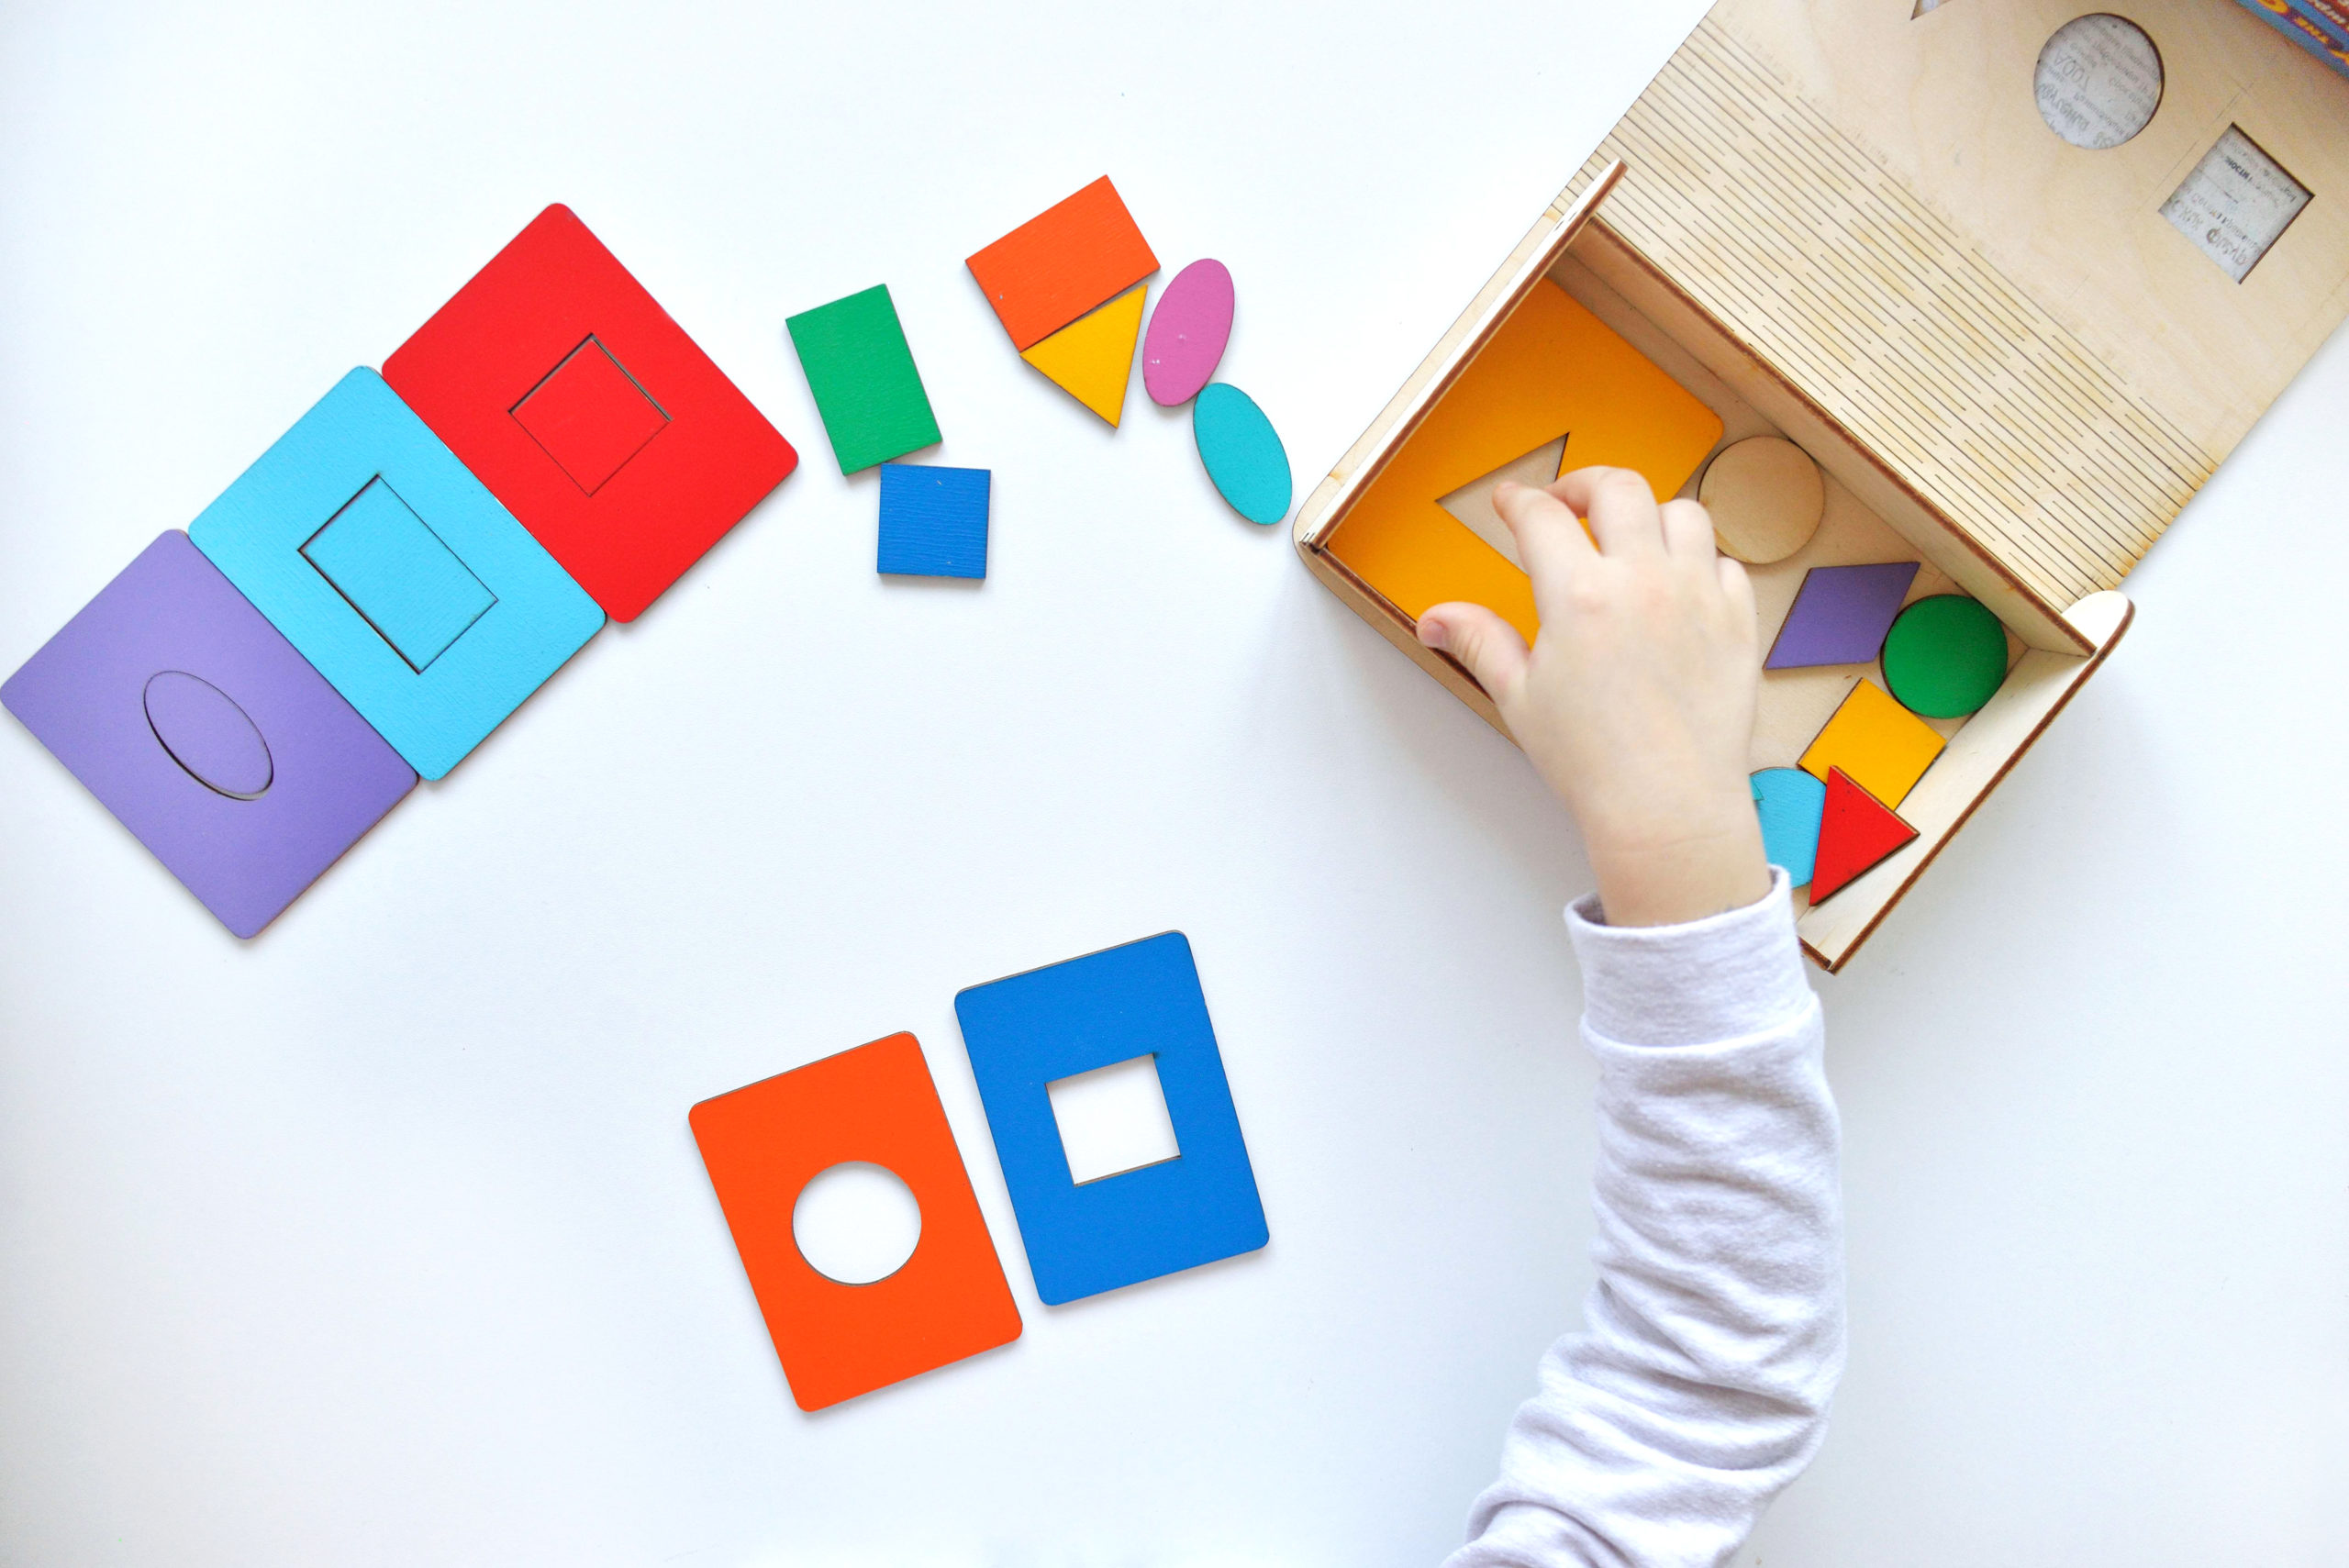 33 activités Montessori de vie pratique pour les 2 ans 1/2 – 5 ans